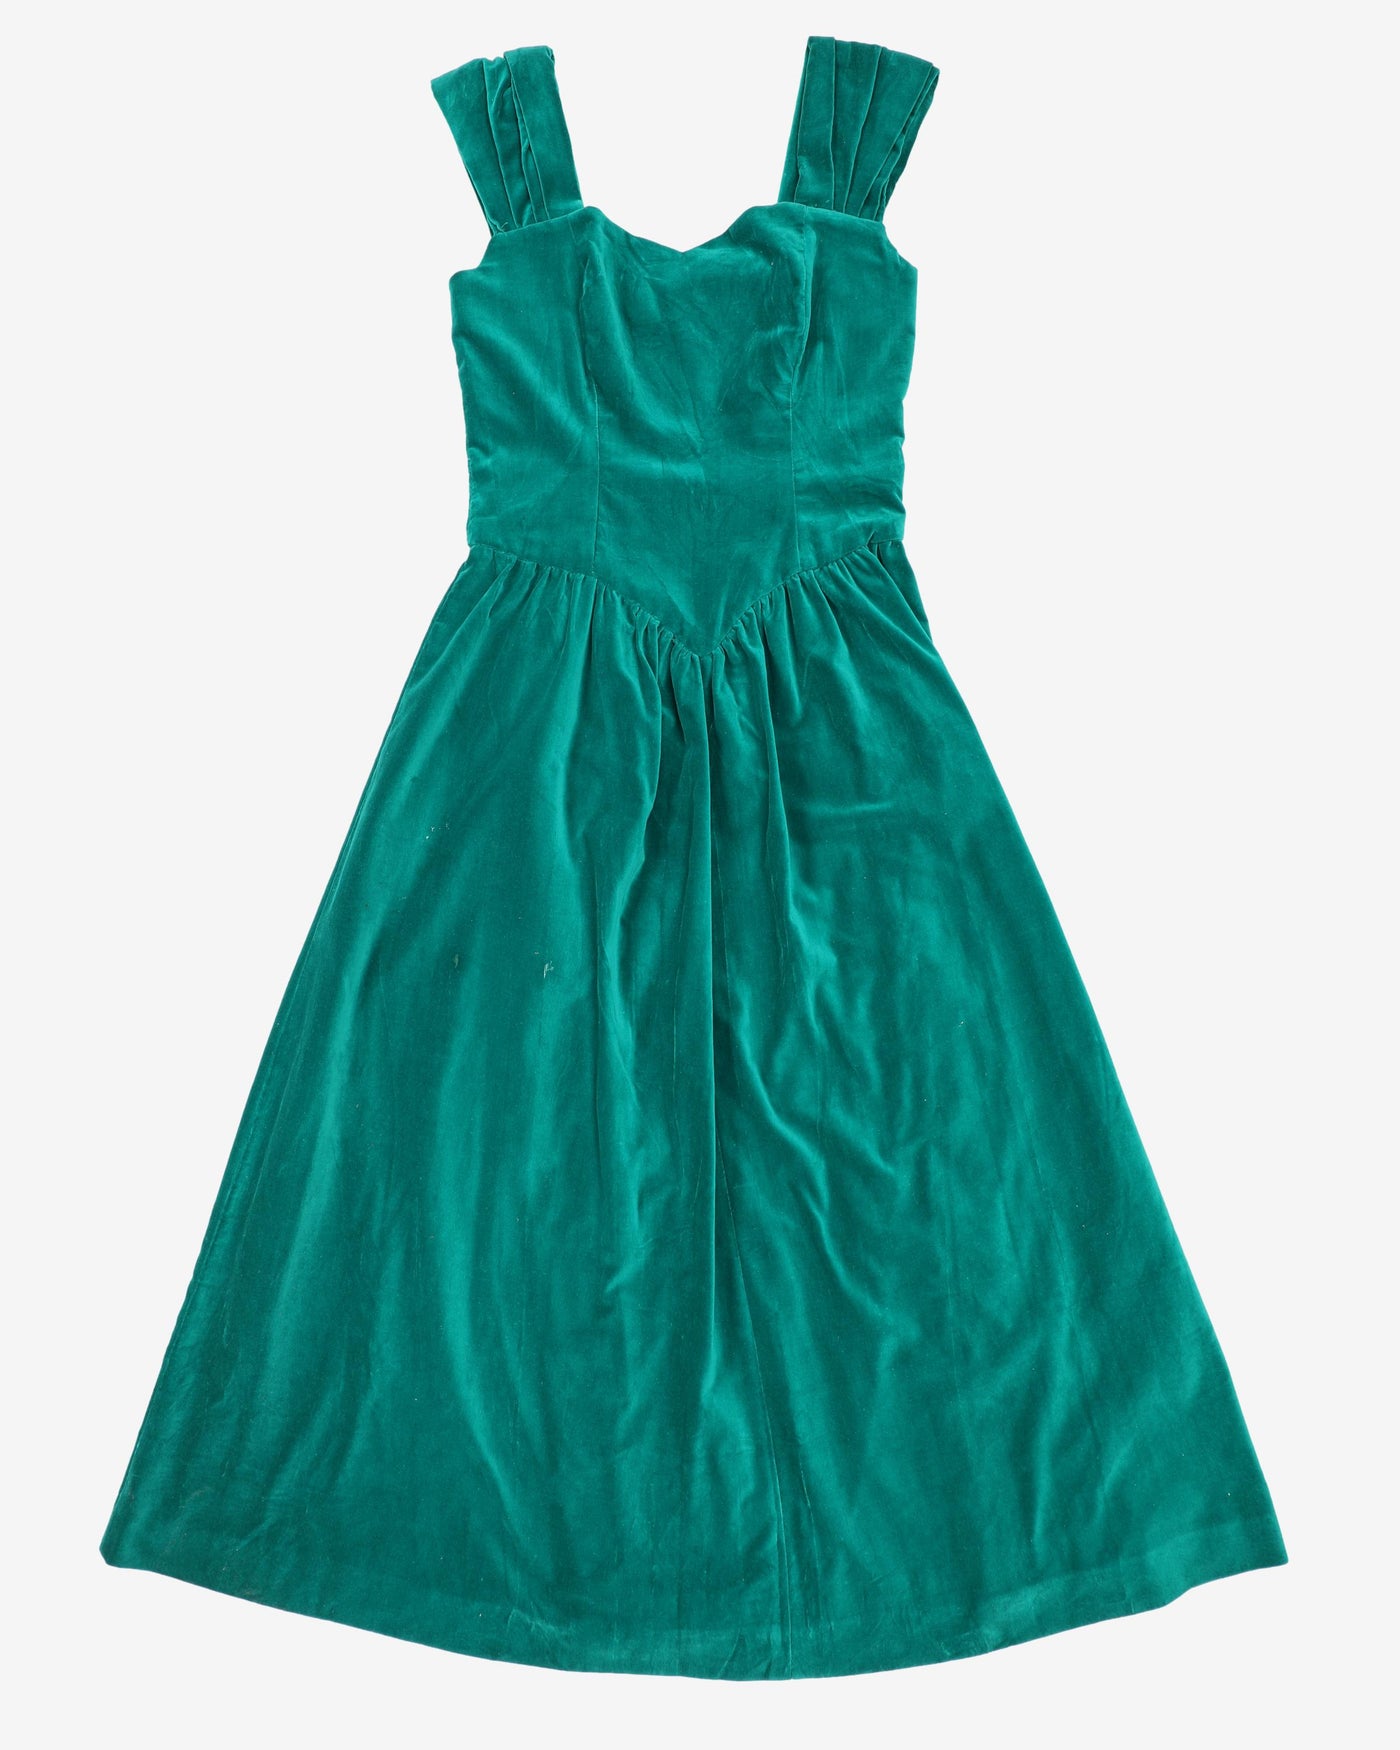 1980s Green Velvet Sleeveless Party Dress